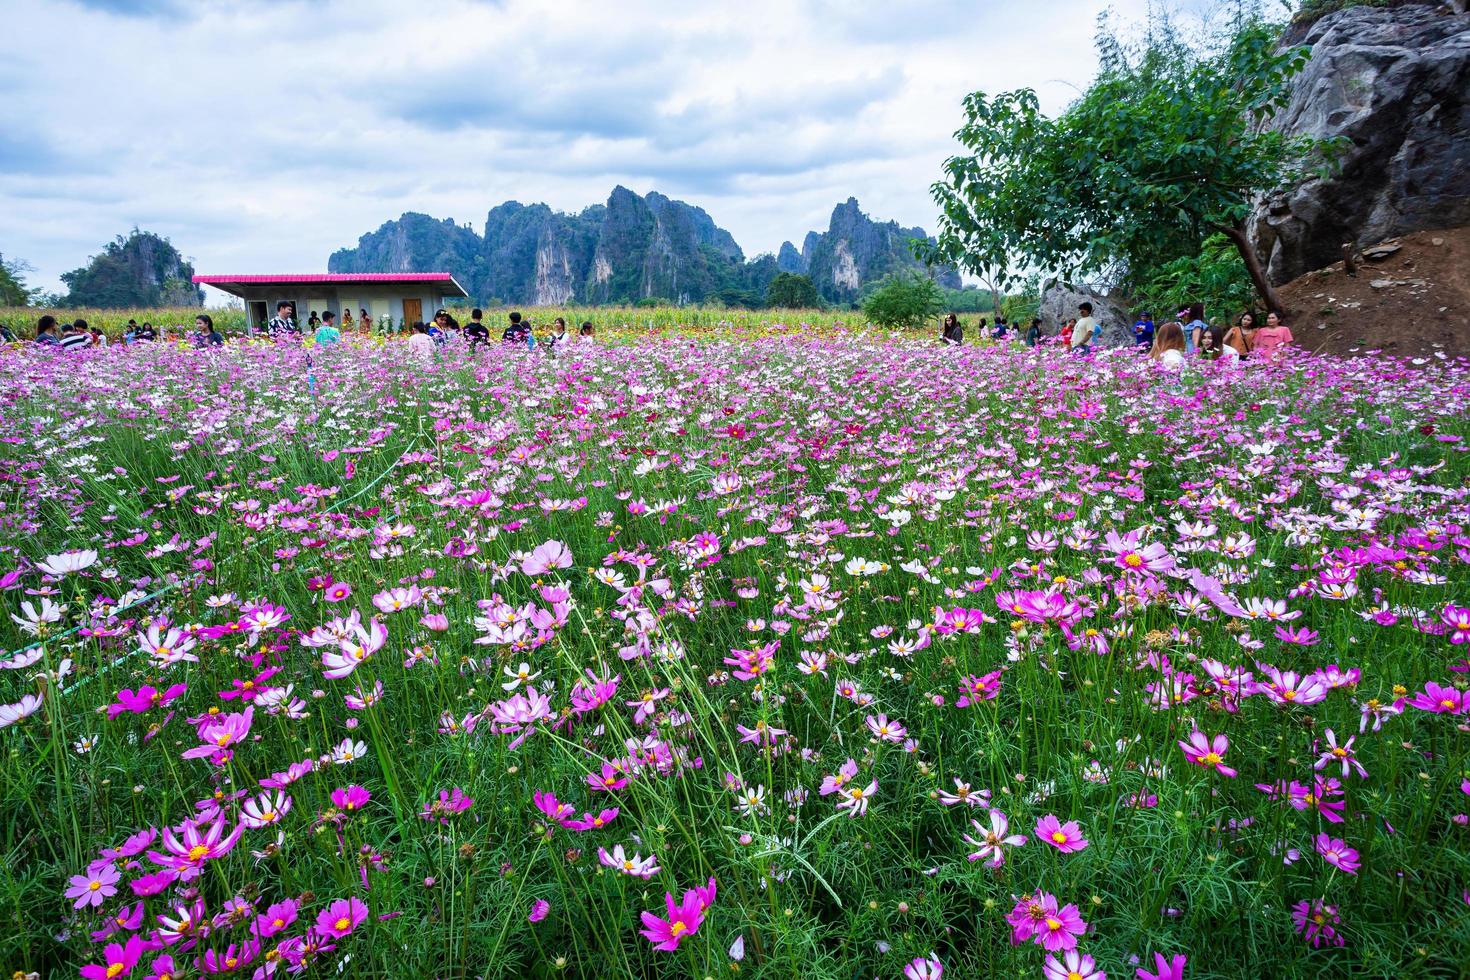 Le cosmos de fleurs roses fleurit magnifiquement dans le jardin avec des montagnes à noen maprang phitsaunlok, en thaïlande. photo